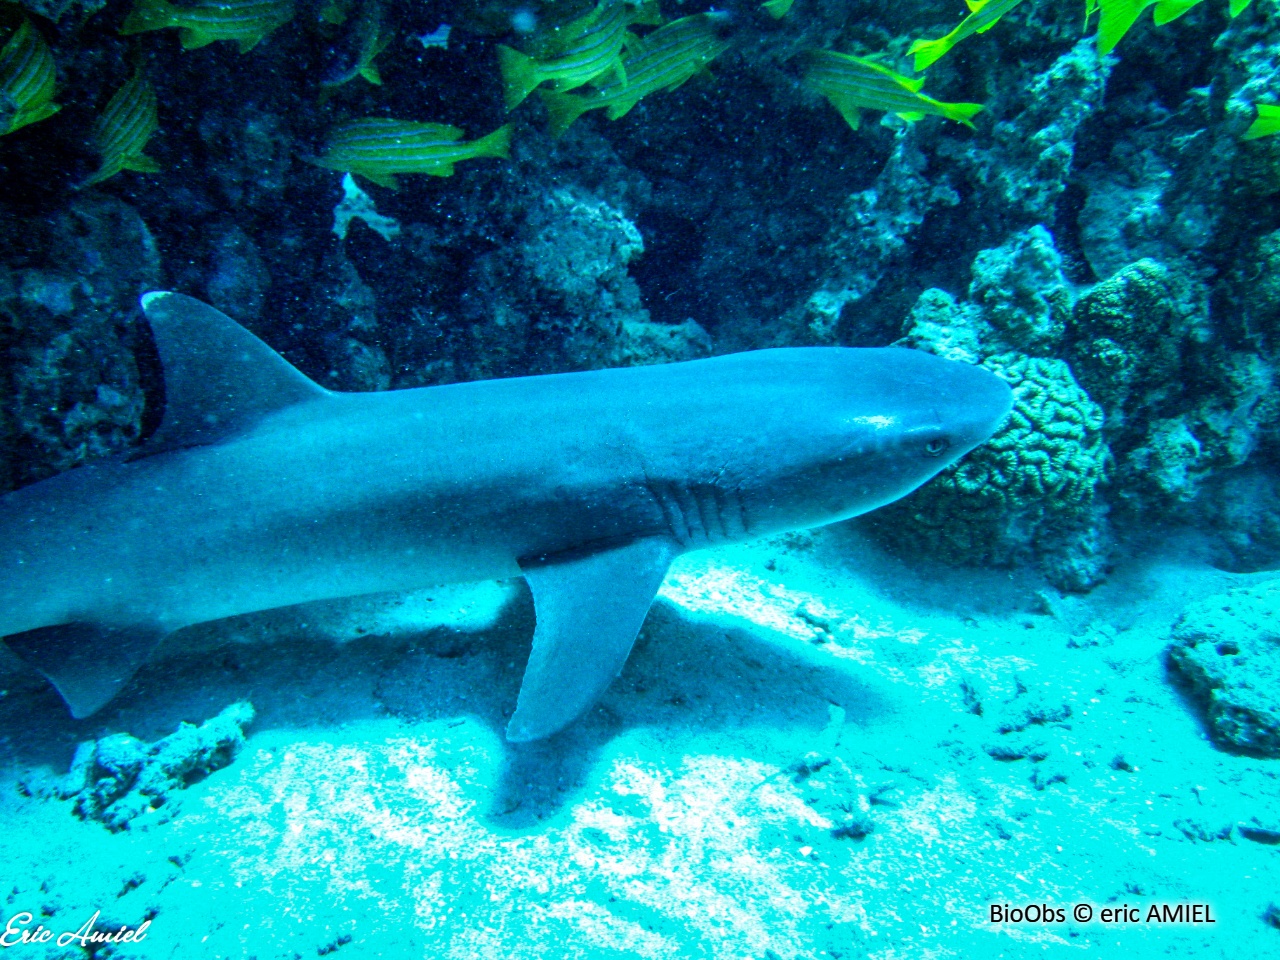 Requin corail - Triaenodon obesus - eric AMIEL - BioObs